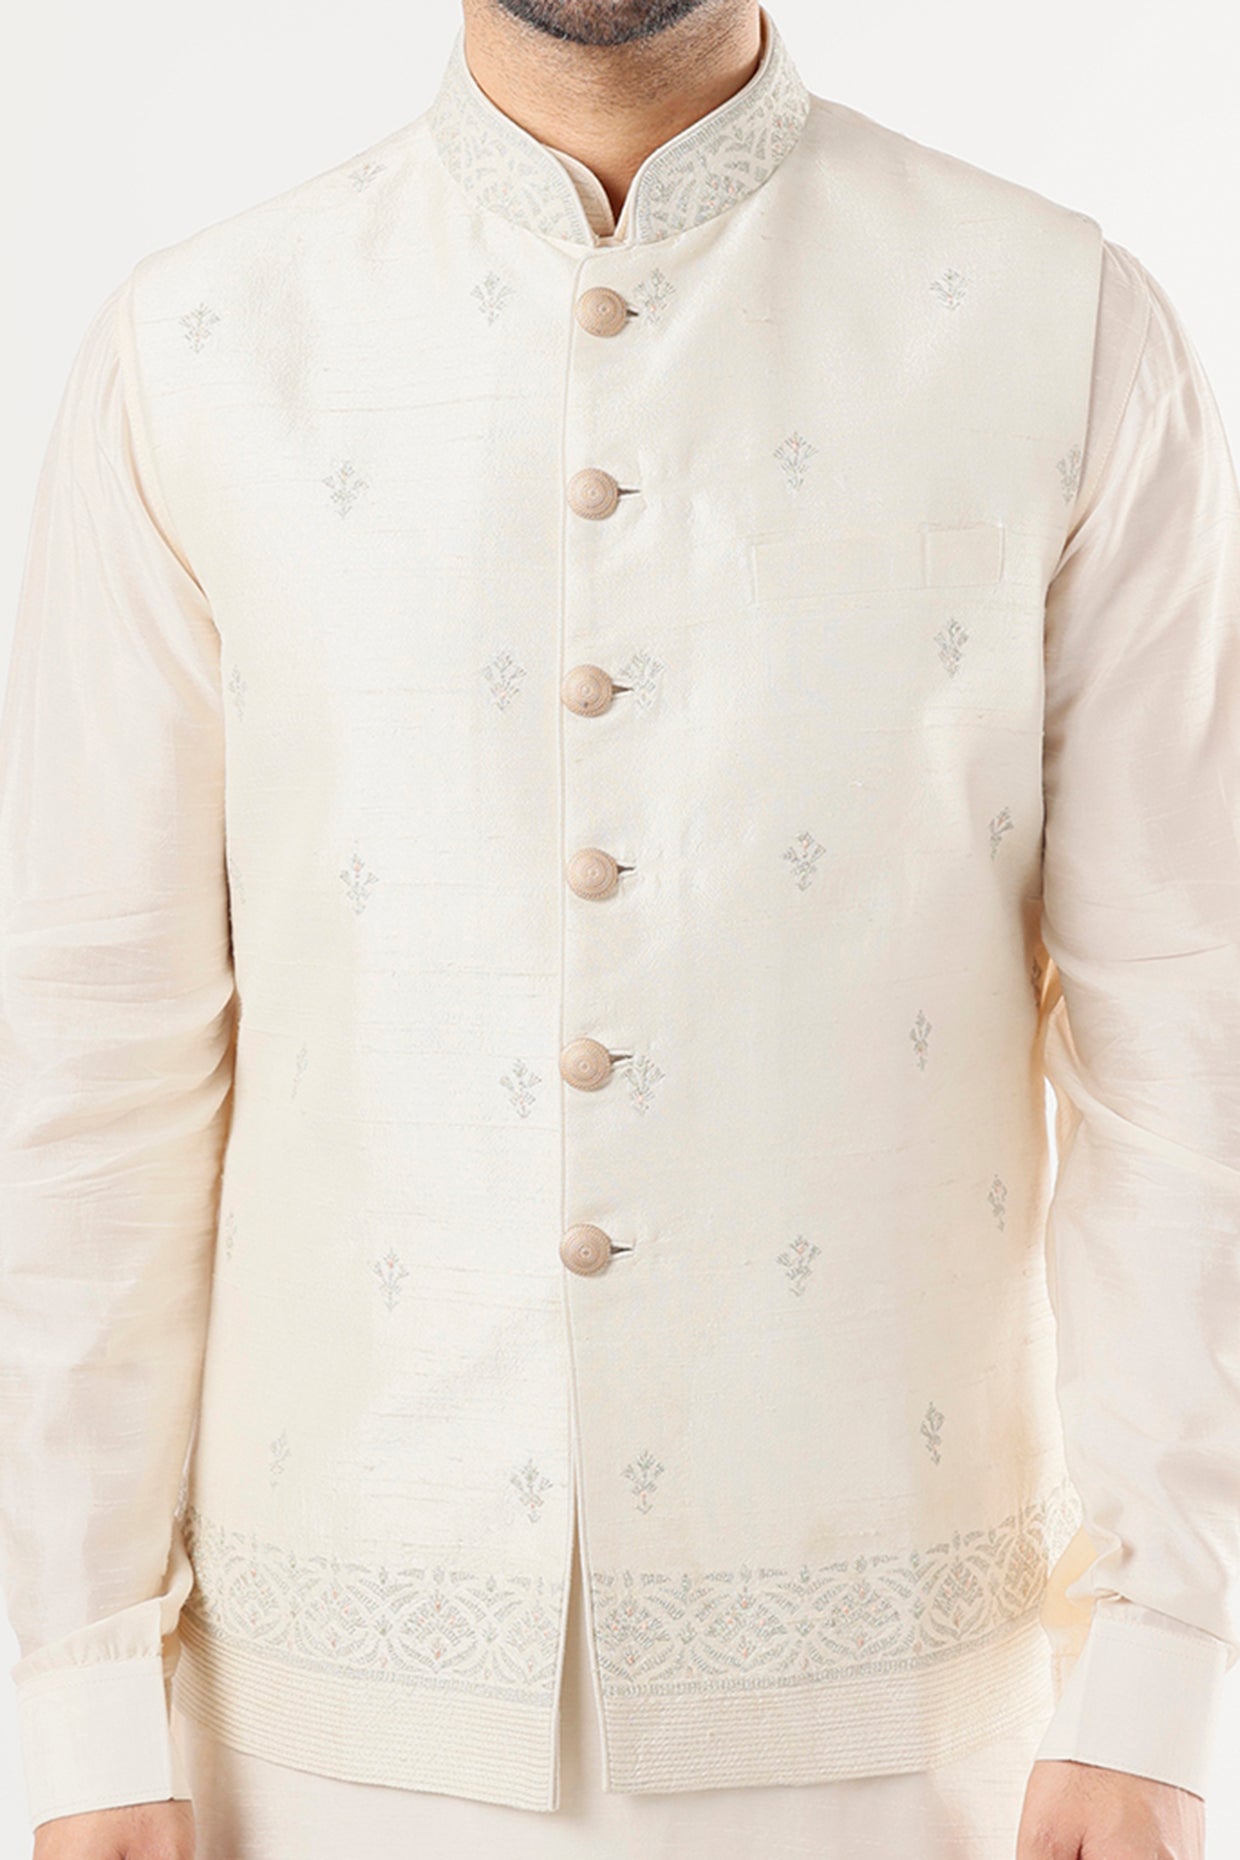 Ivory Embroidered Bundi Jacket With Kurta Set